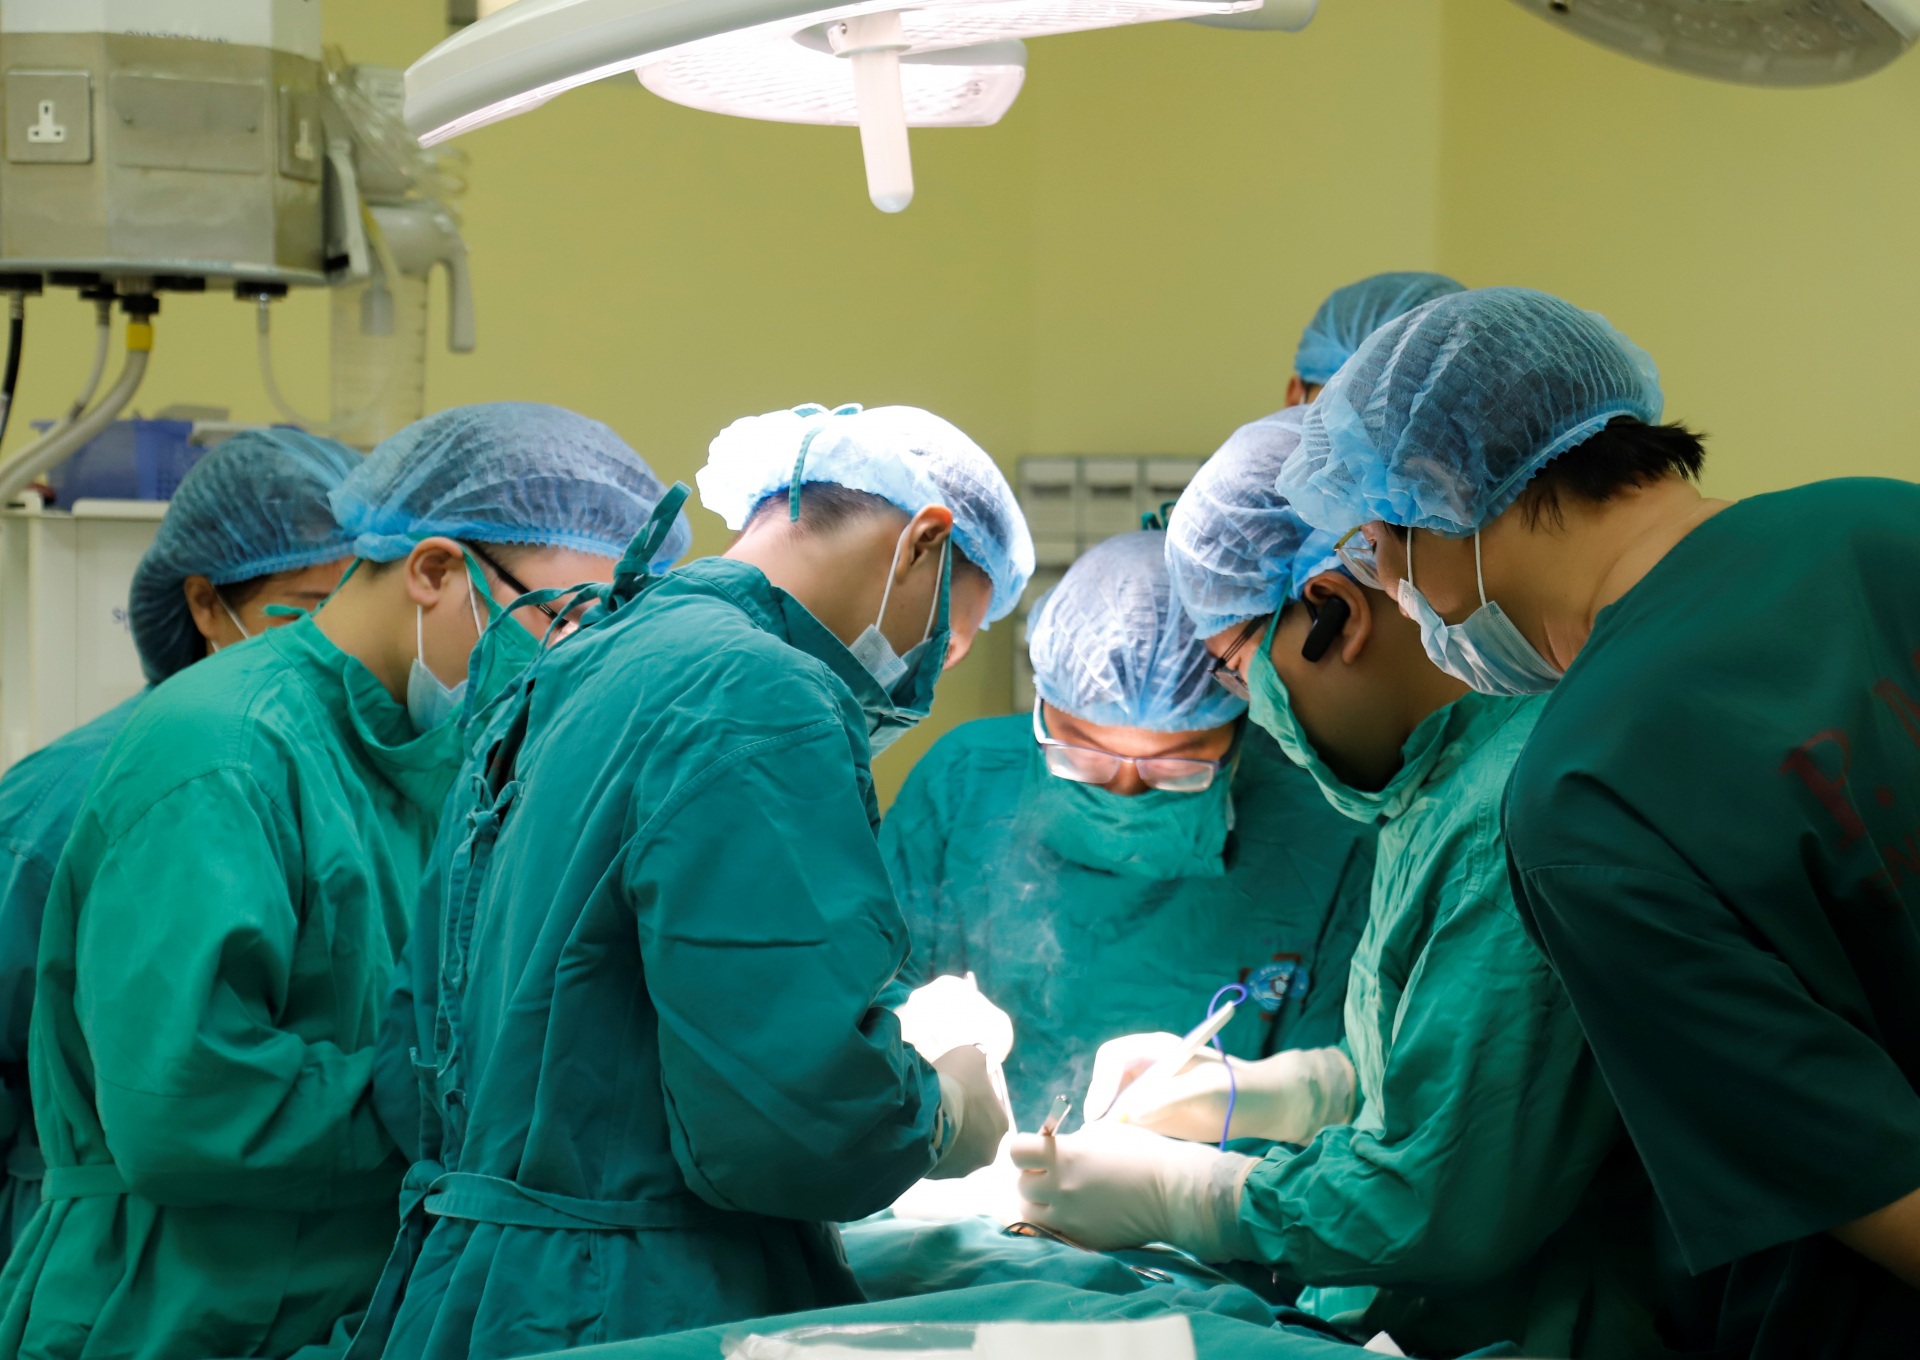 Chuyển bệnh viện trung ương cho Hà Nội 'quản': Sẽ tác động đến hệ thống y tế của toàn quốc - Ảnh 3.